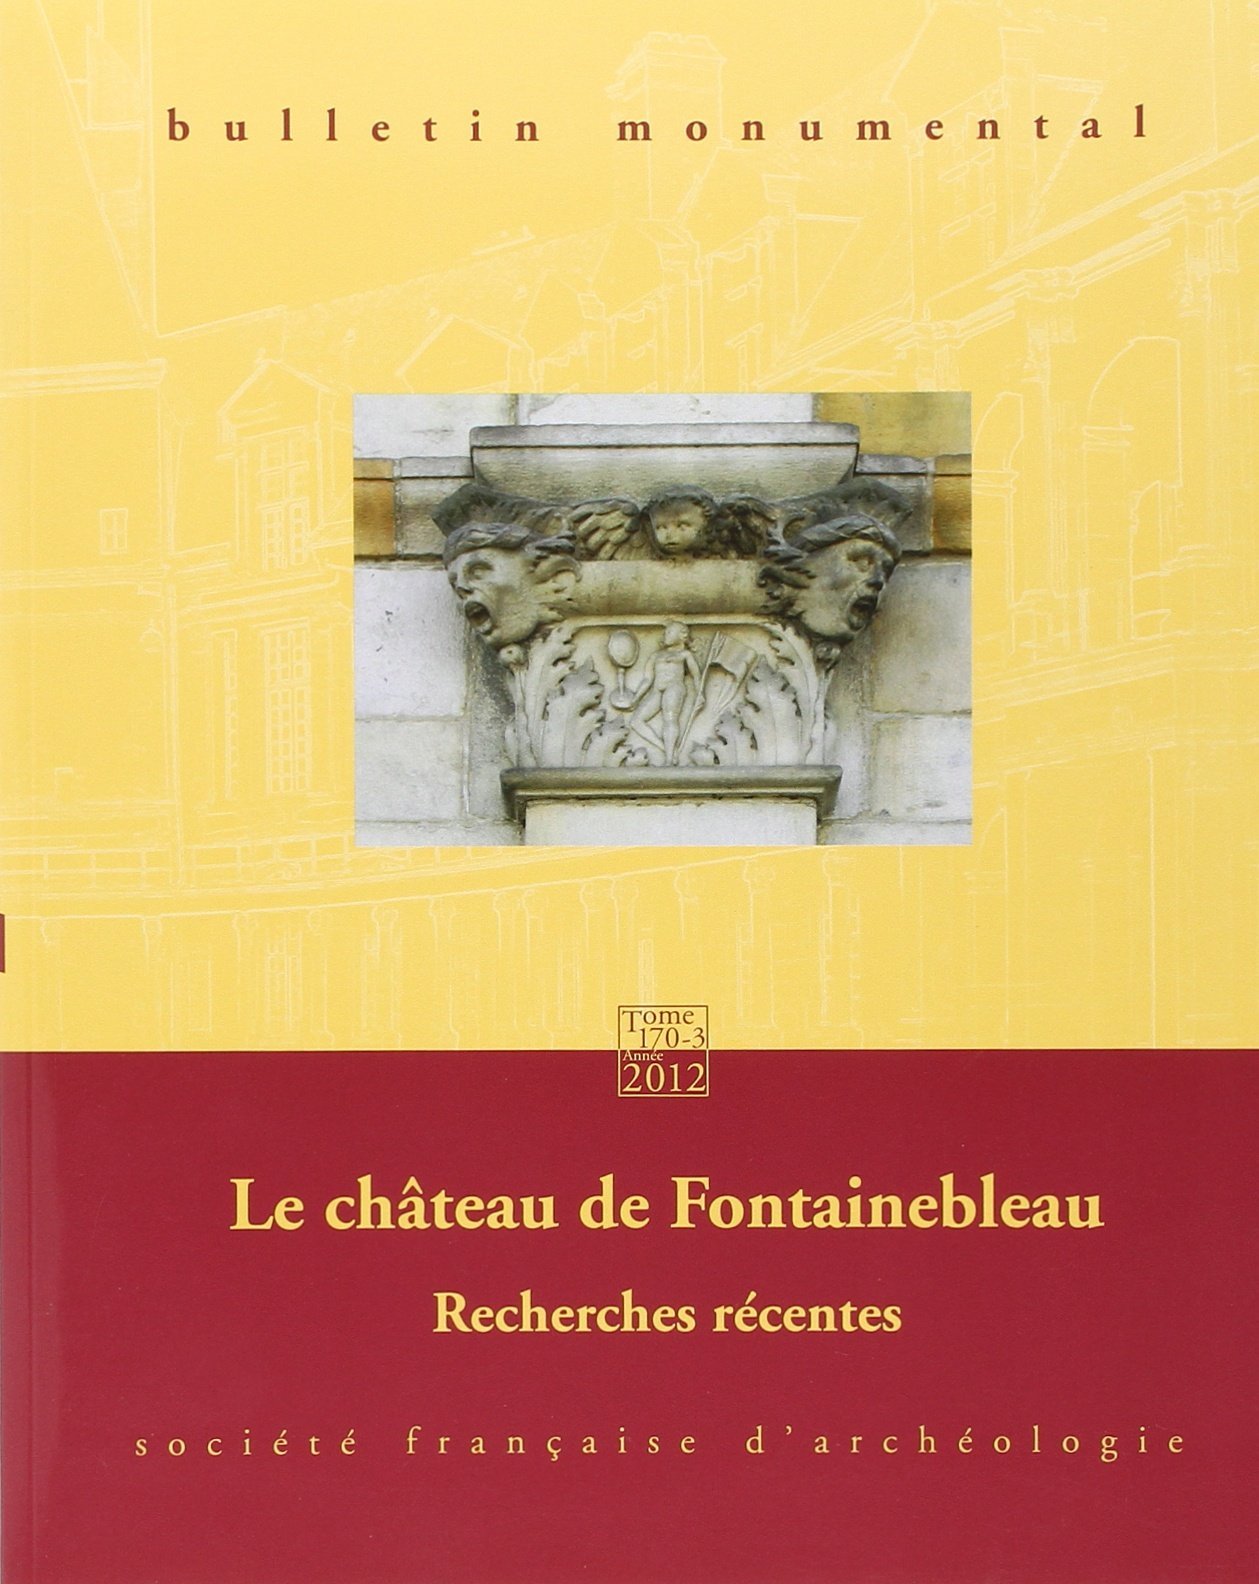 170-3, 2012. Le château de Fontainebleau, recherches récentes.